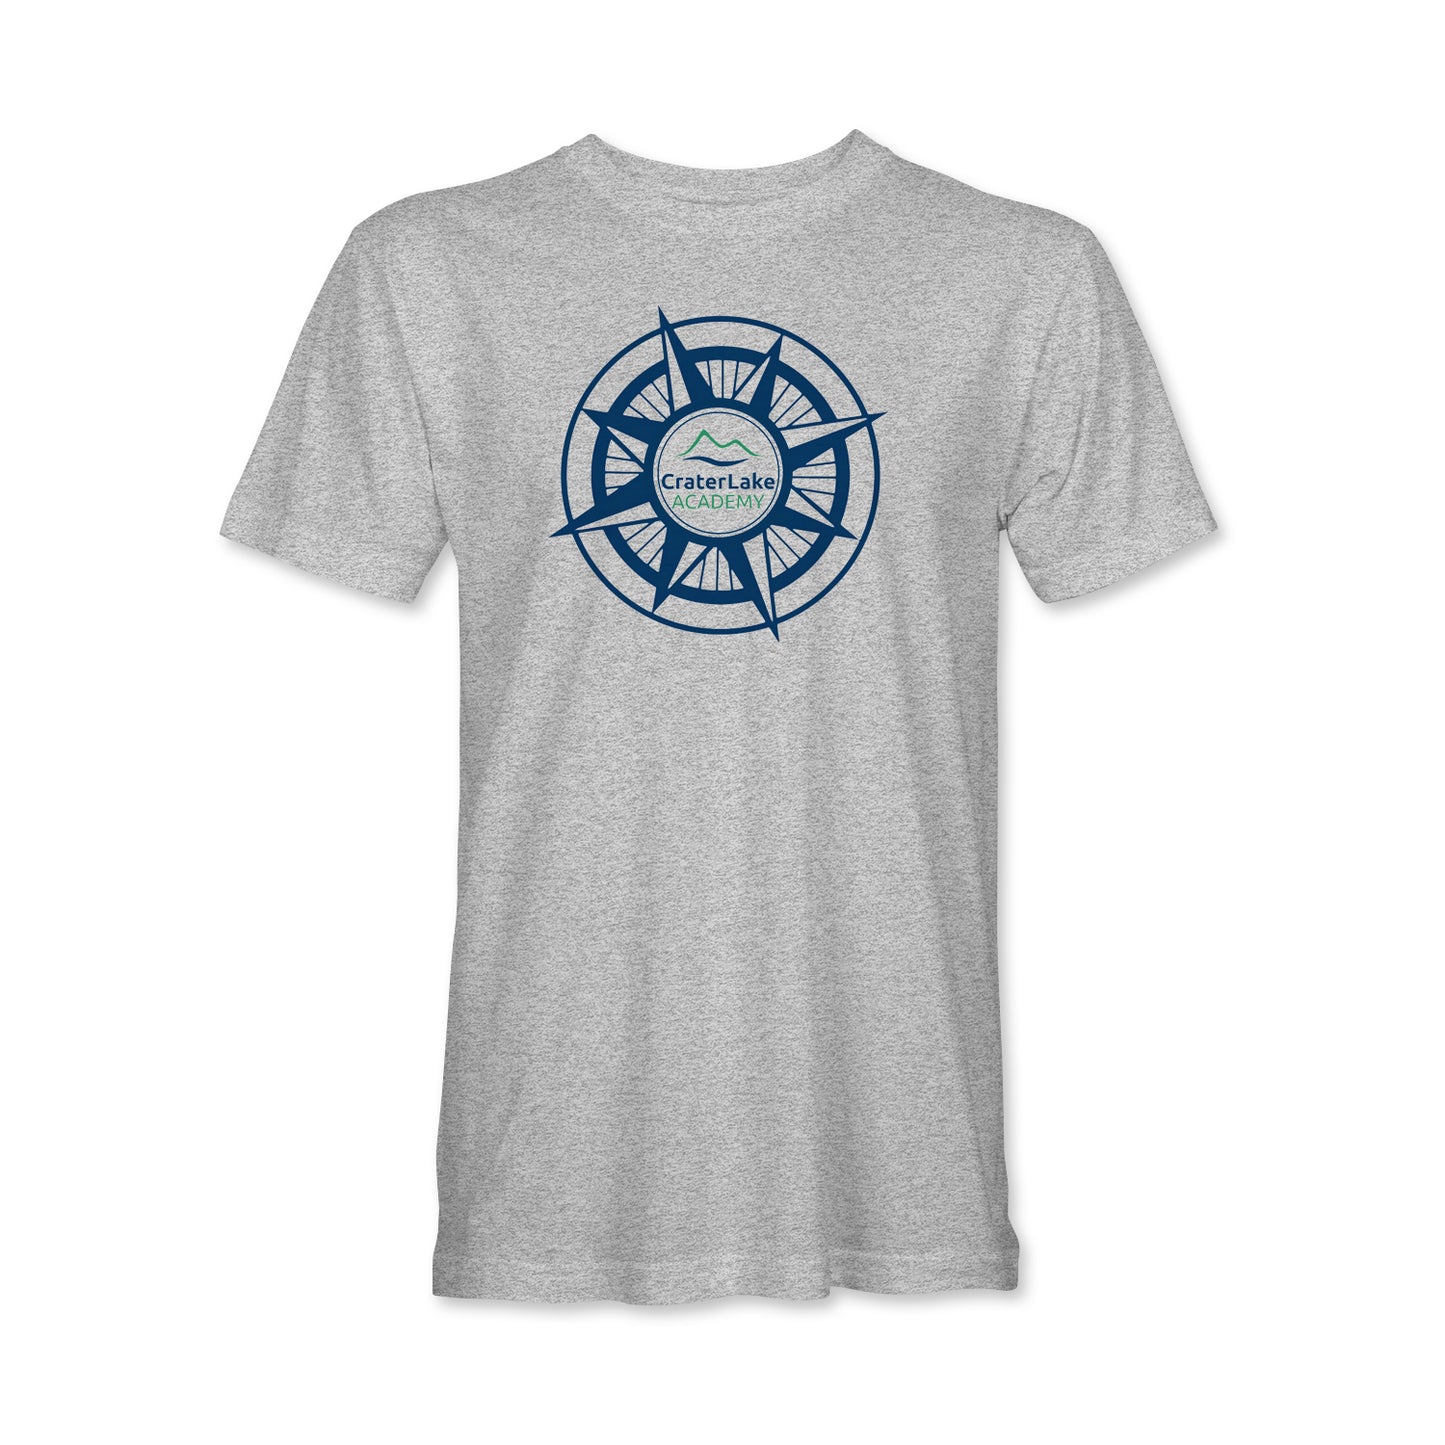 Compass T-Shirt (CLA)